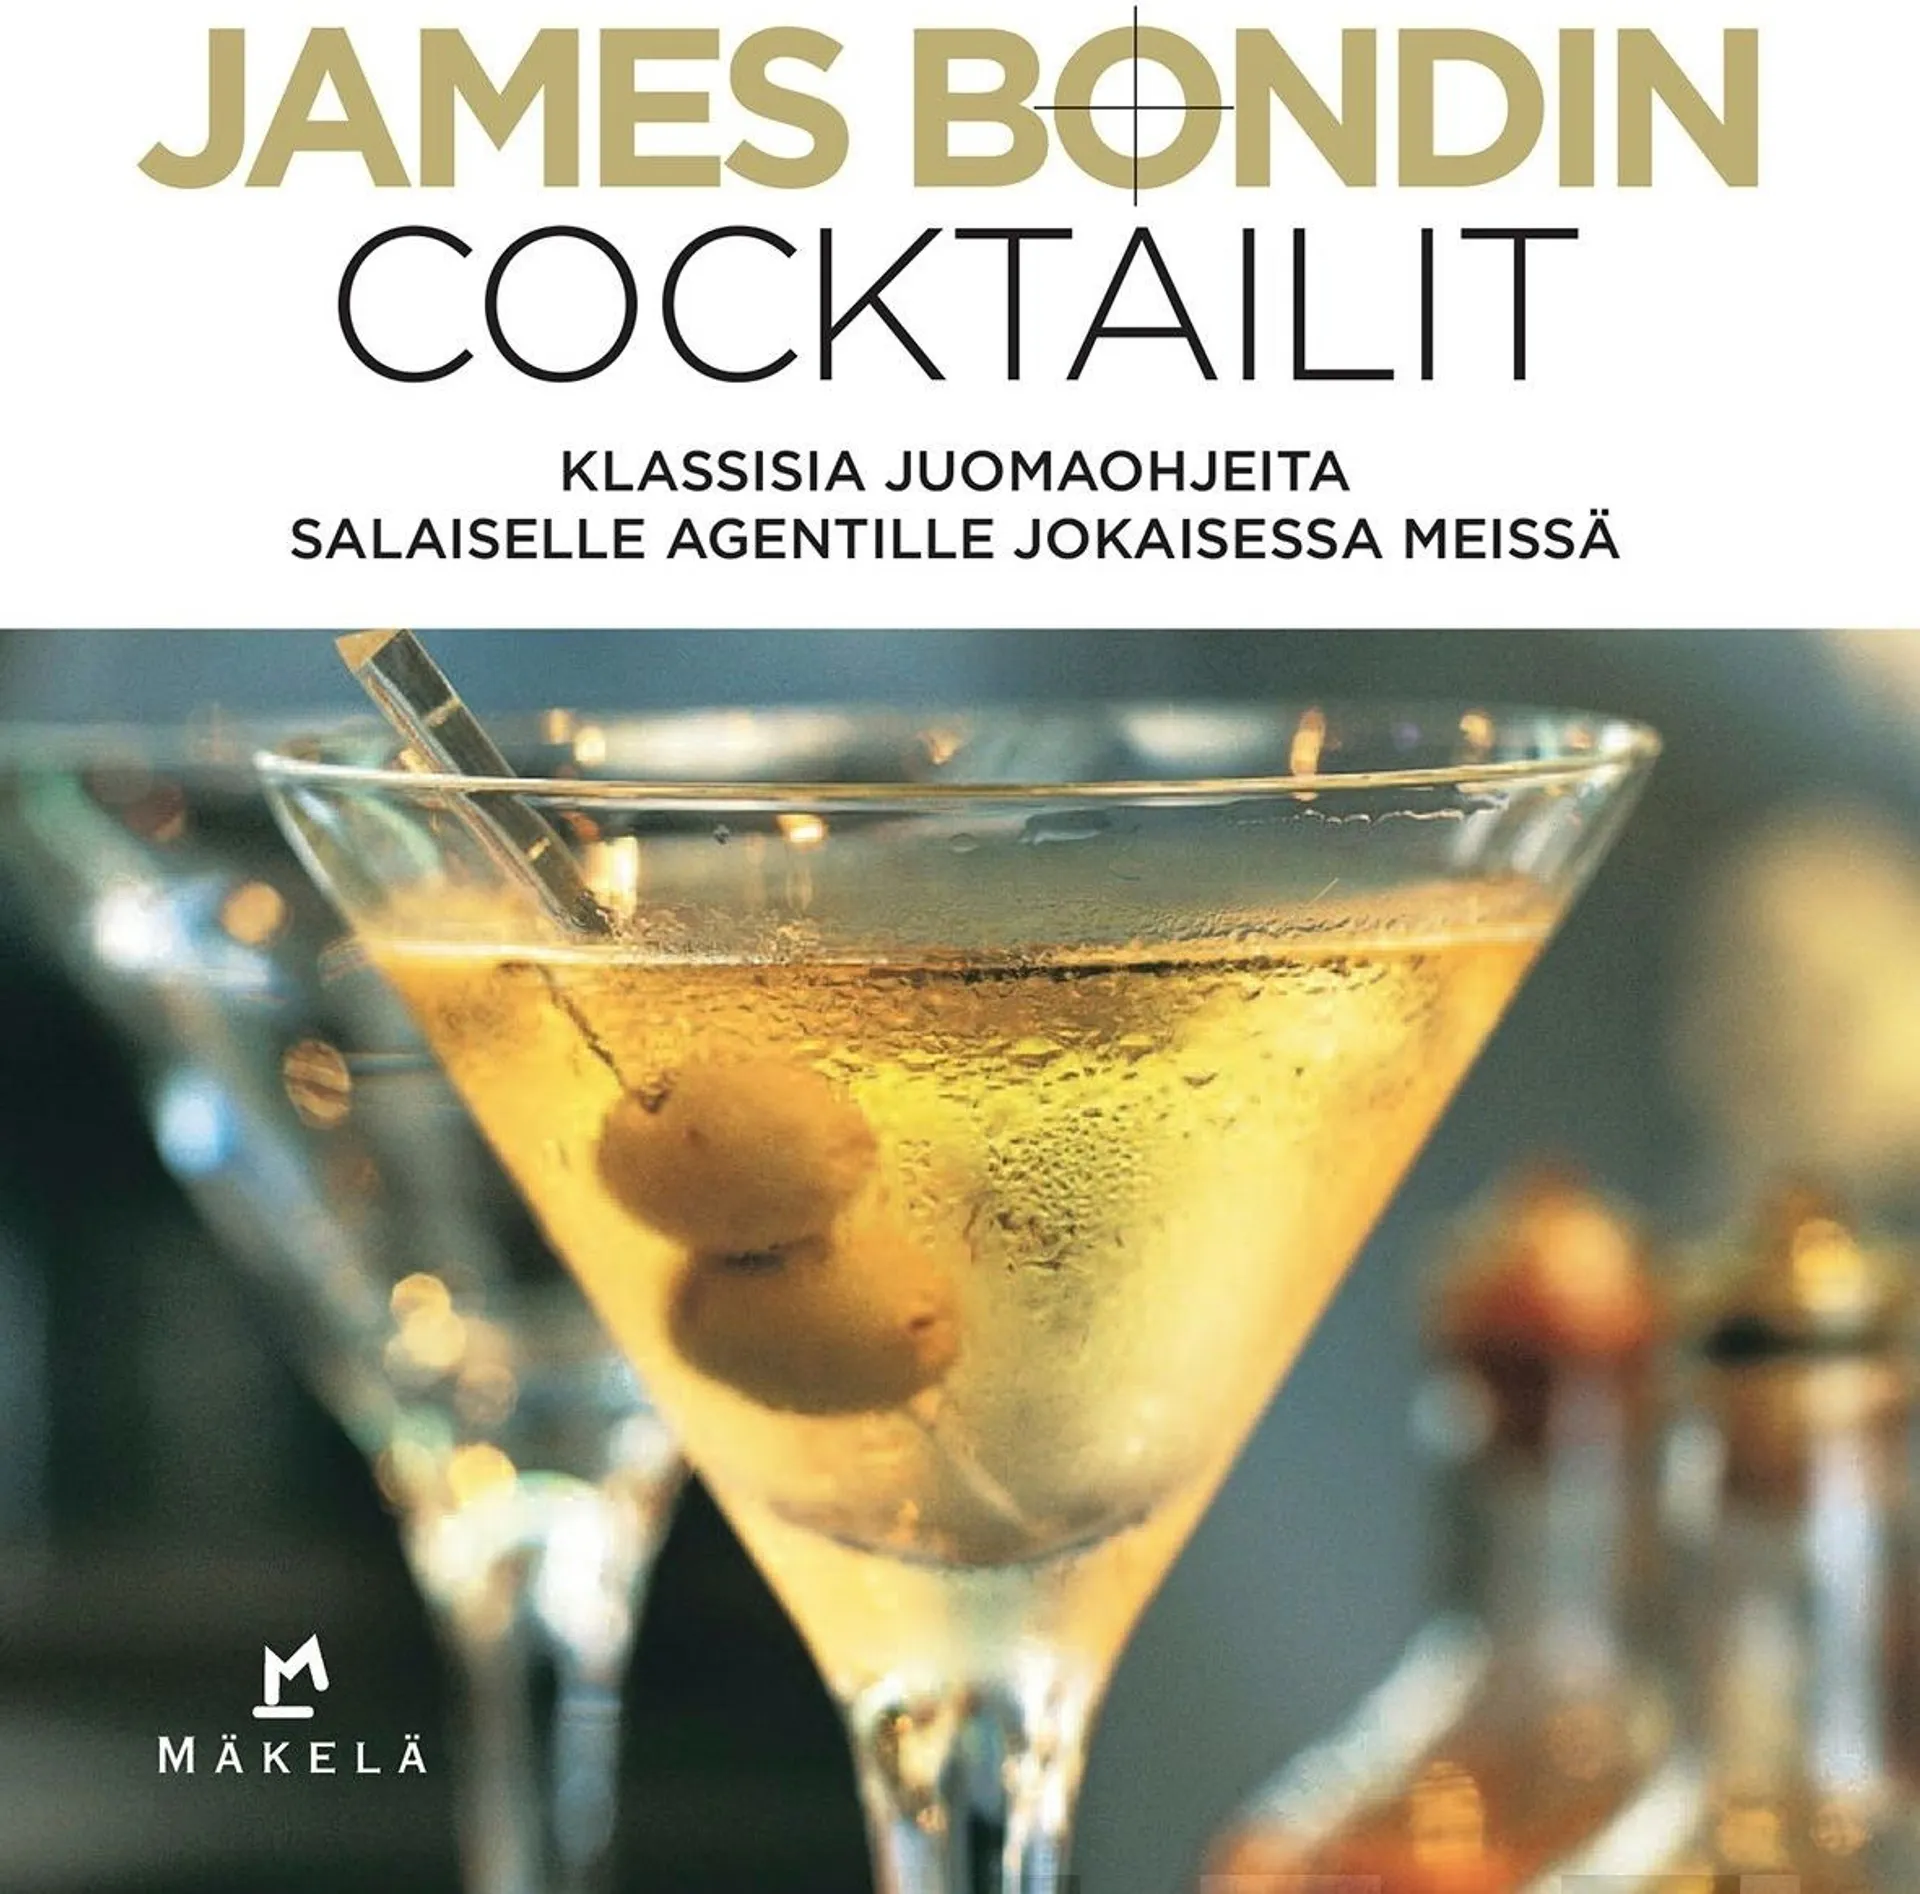 Bebo, James Bondin cocktailit